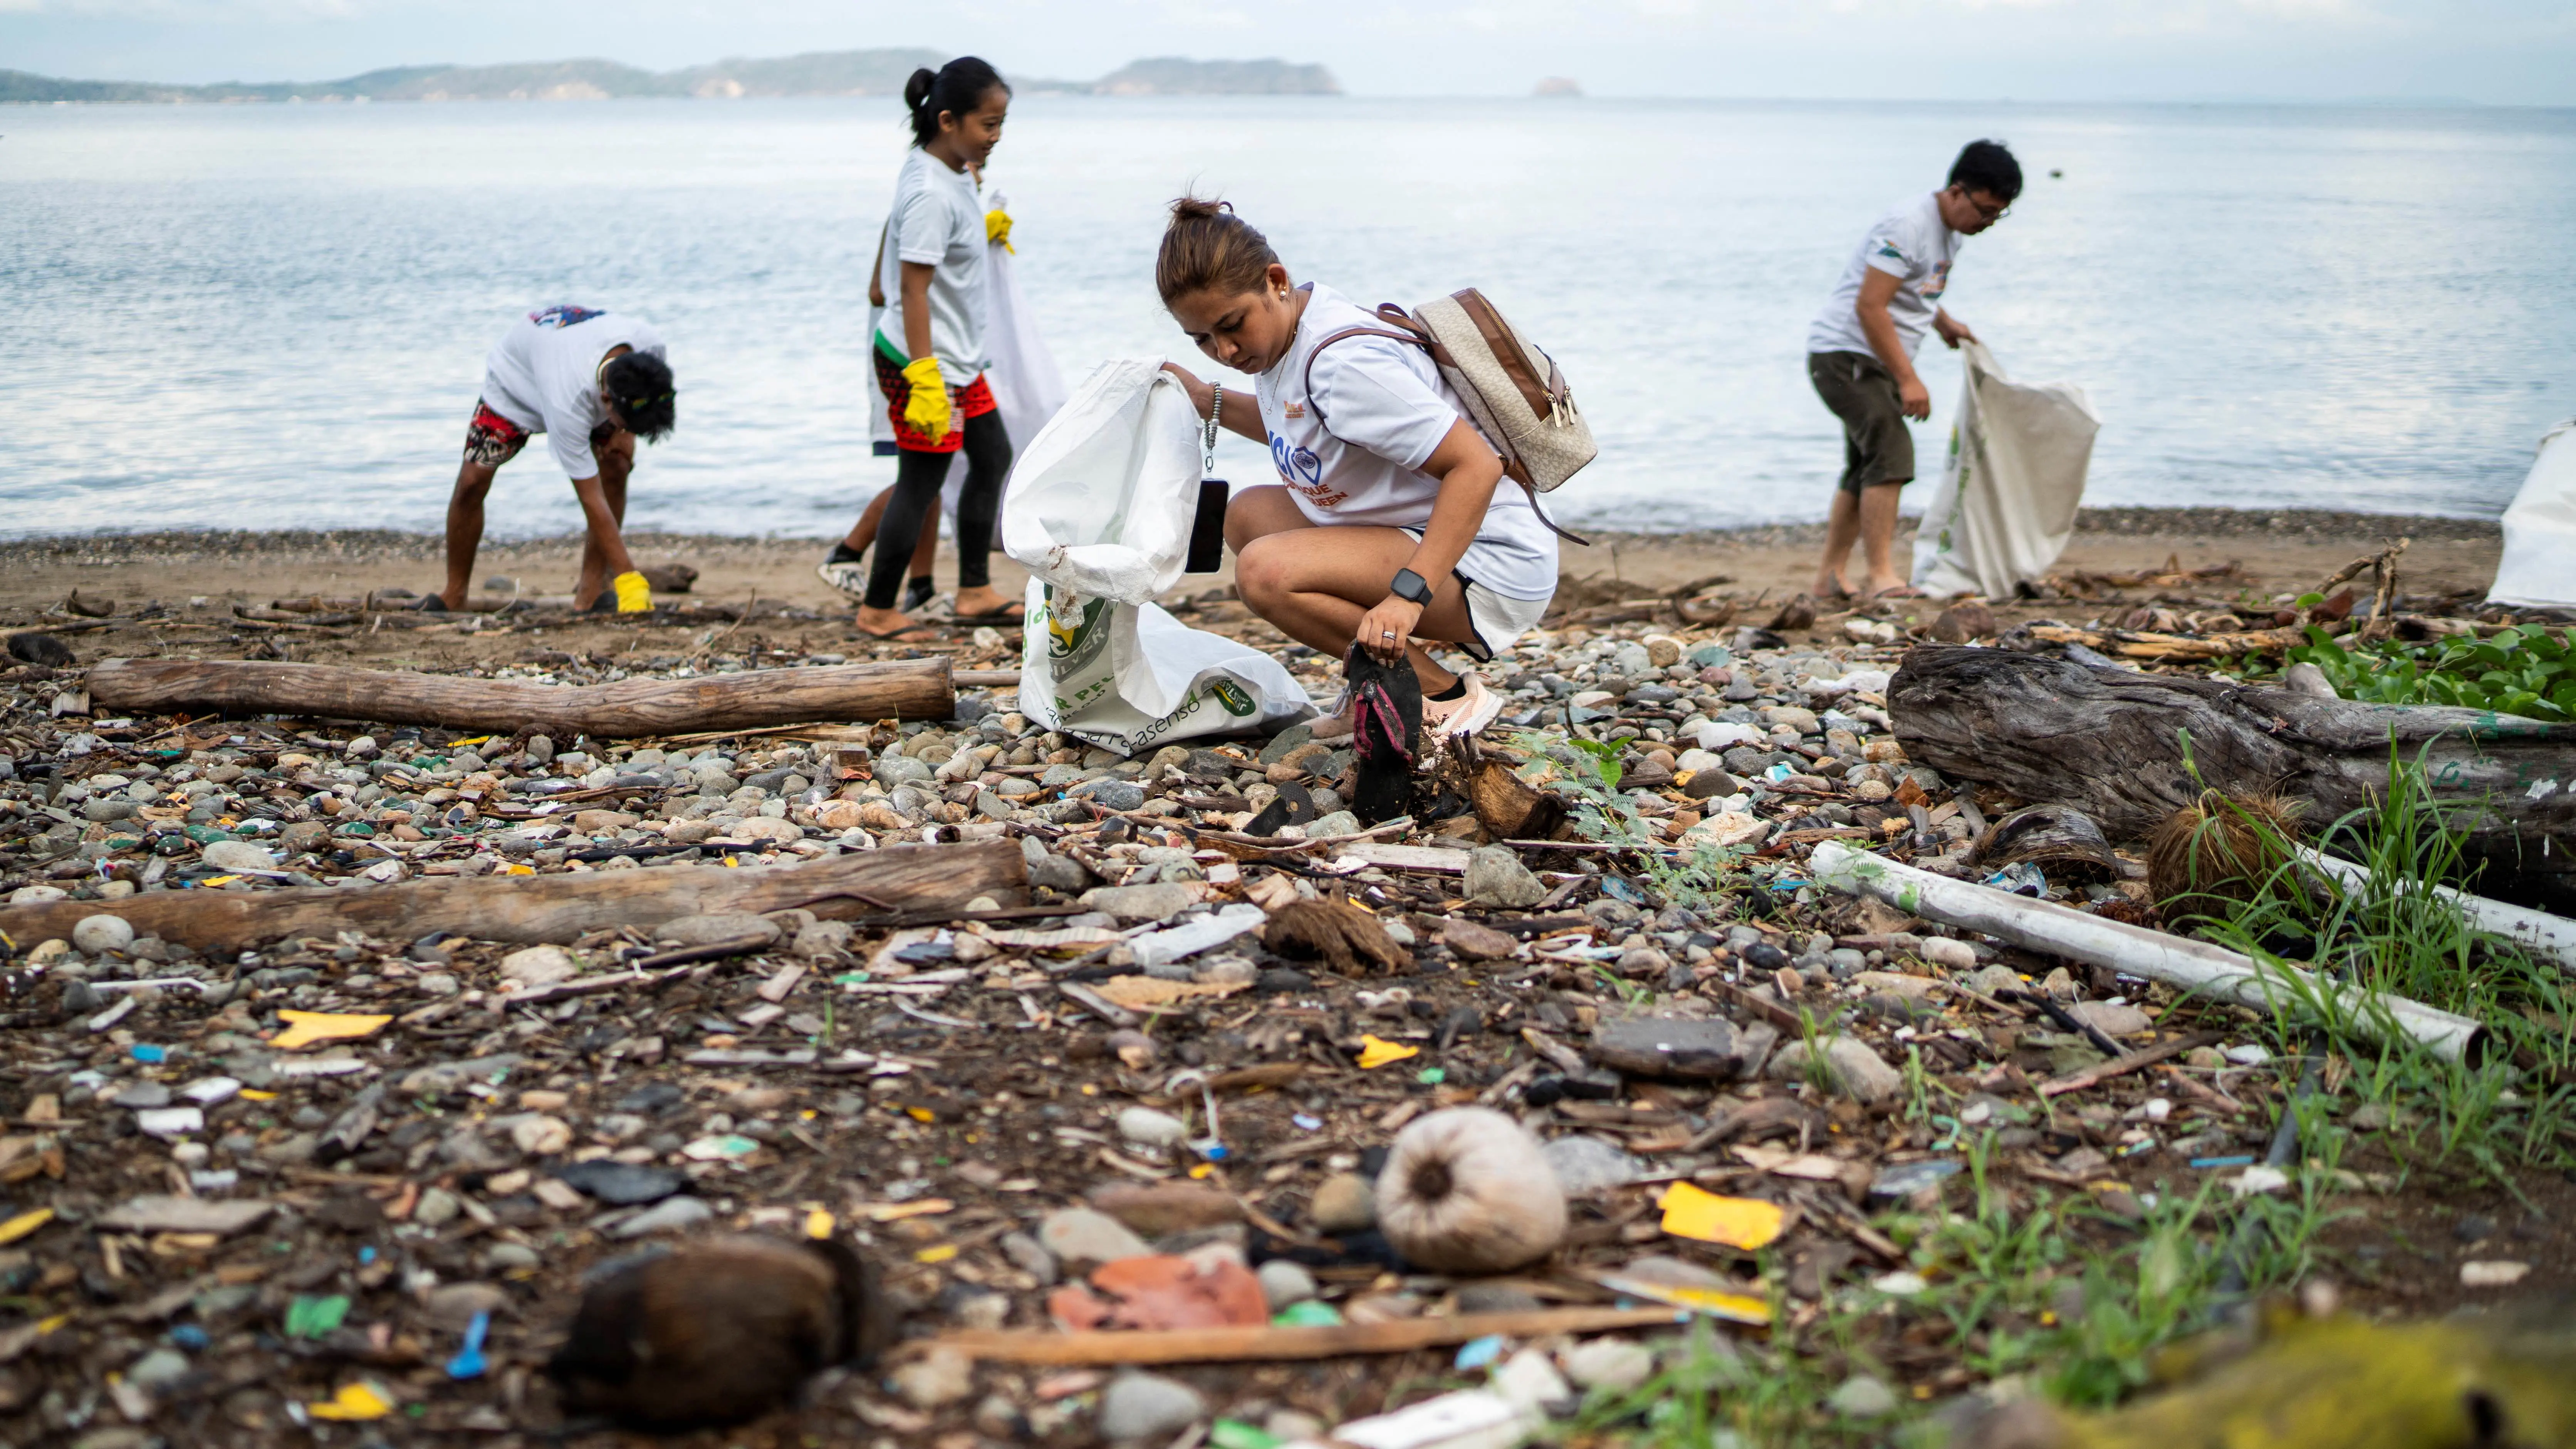 طريقة "فريدة" لتنظيف شواطئ الفلبين.. كيف؟